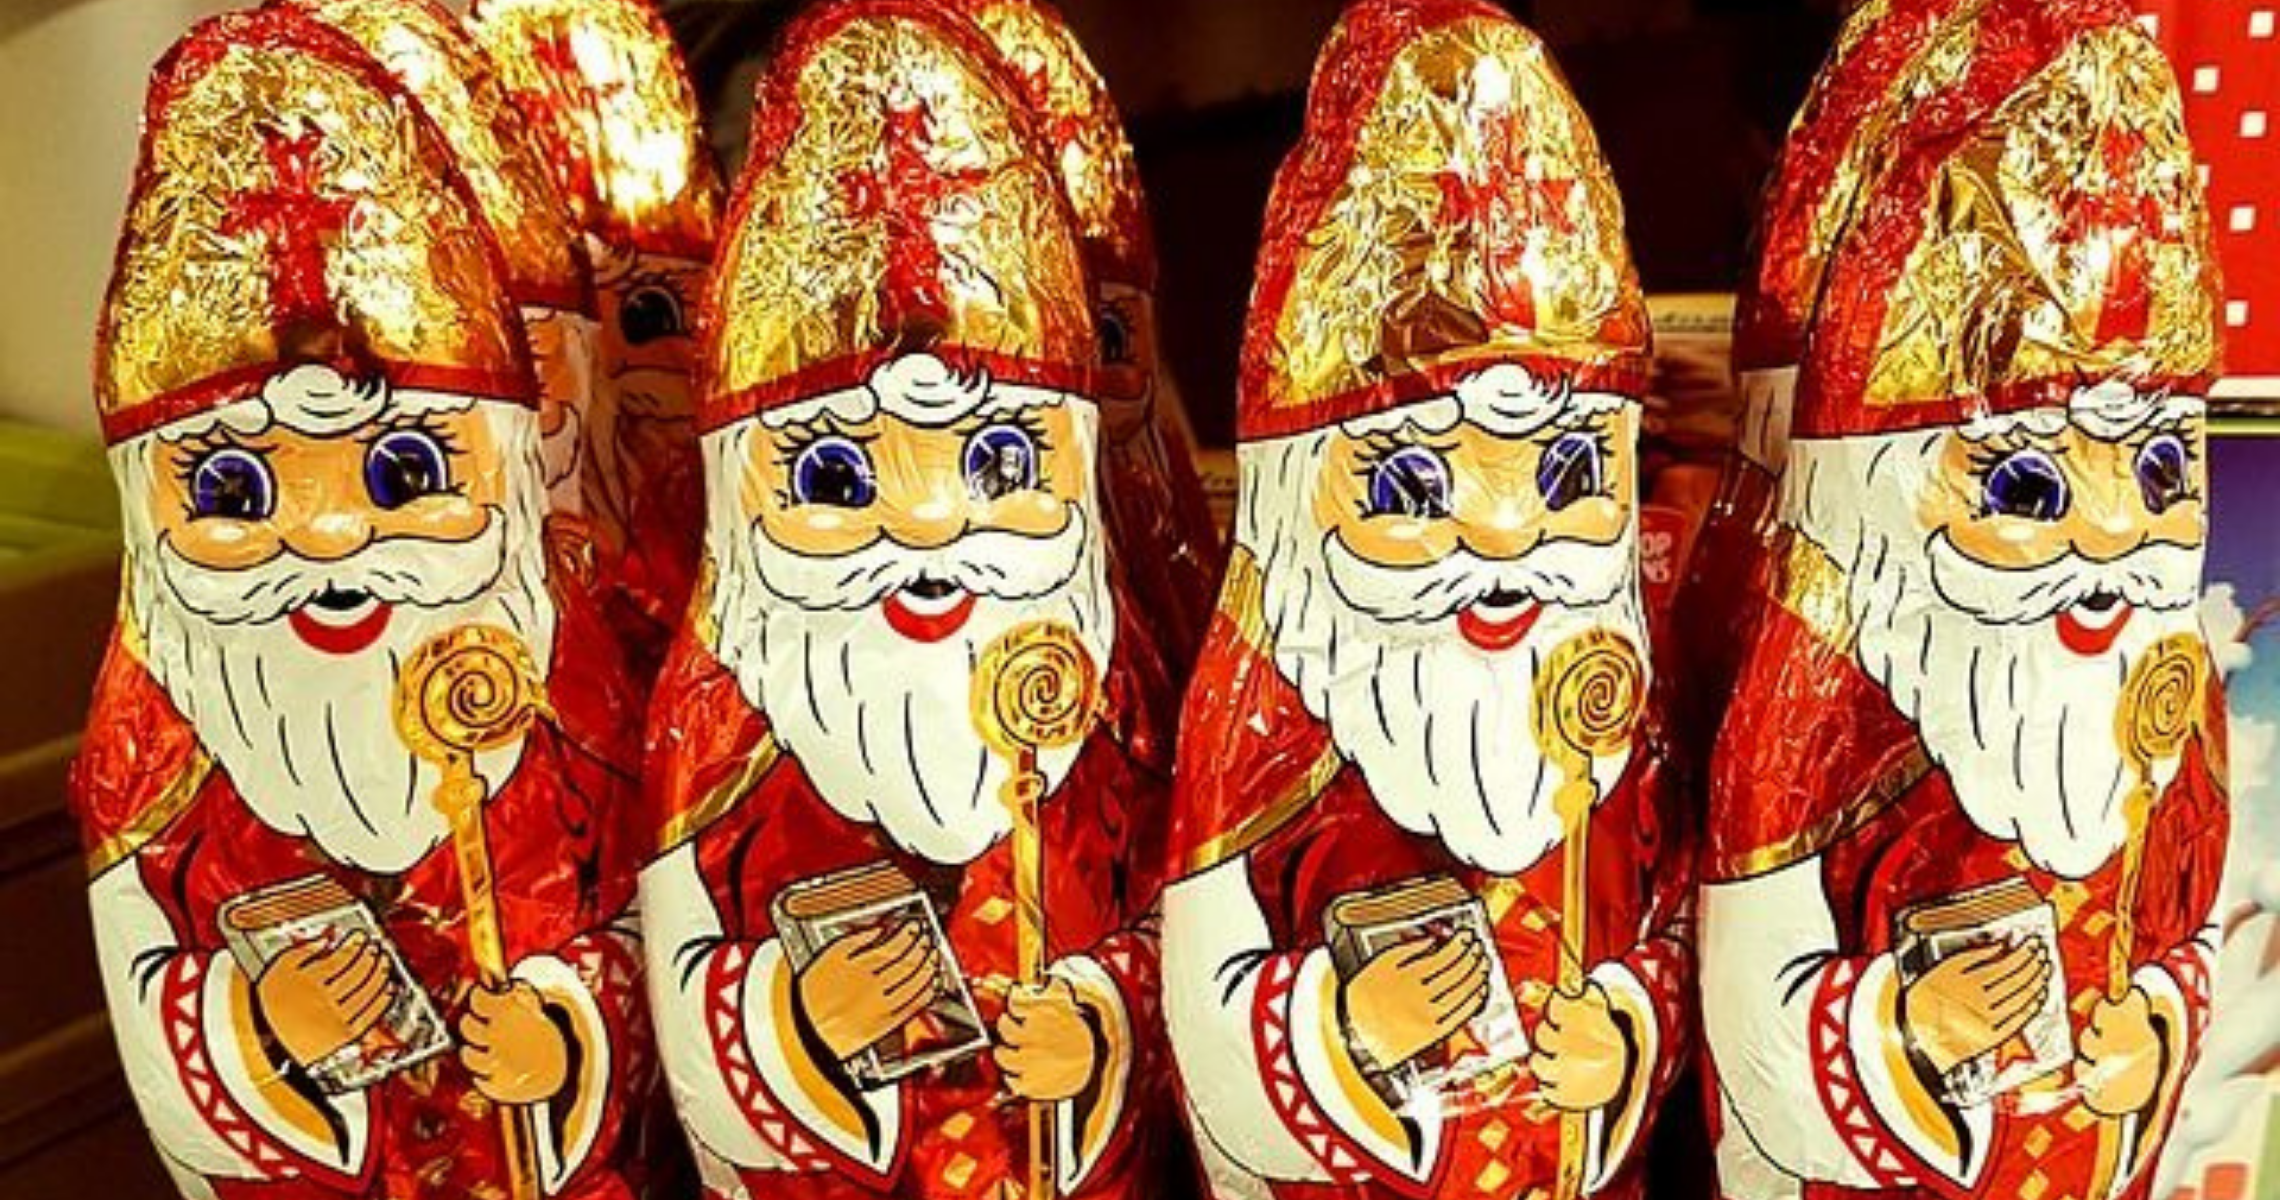 afdeling Induceren Ontslag Sinterklaas dobbelspel & ideeen voor cadeautjes Sinterklaasavond